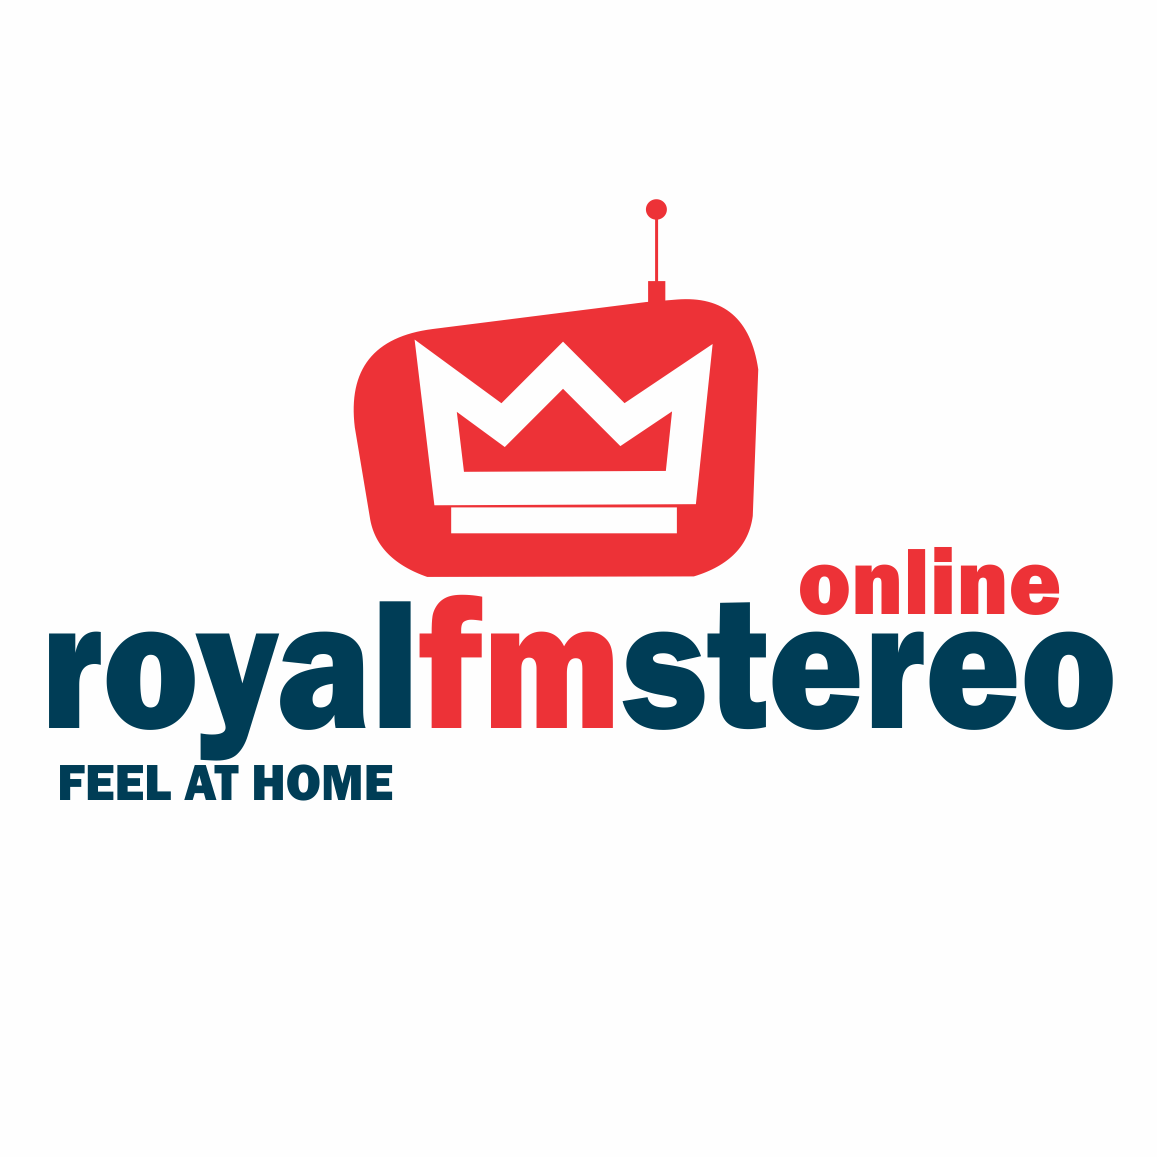 Royal fm stereo Zimbabwe